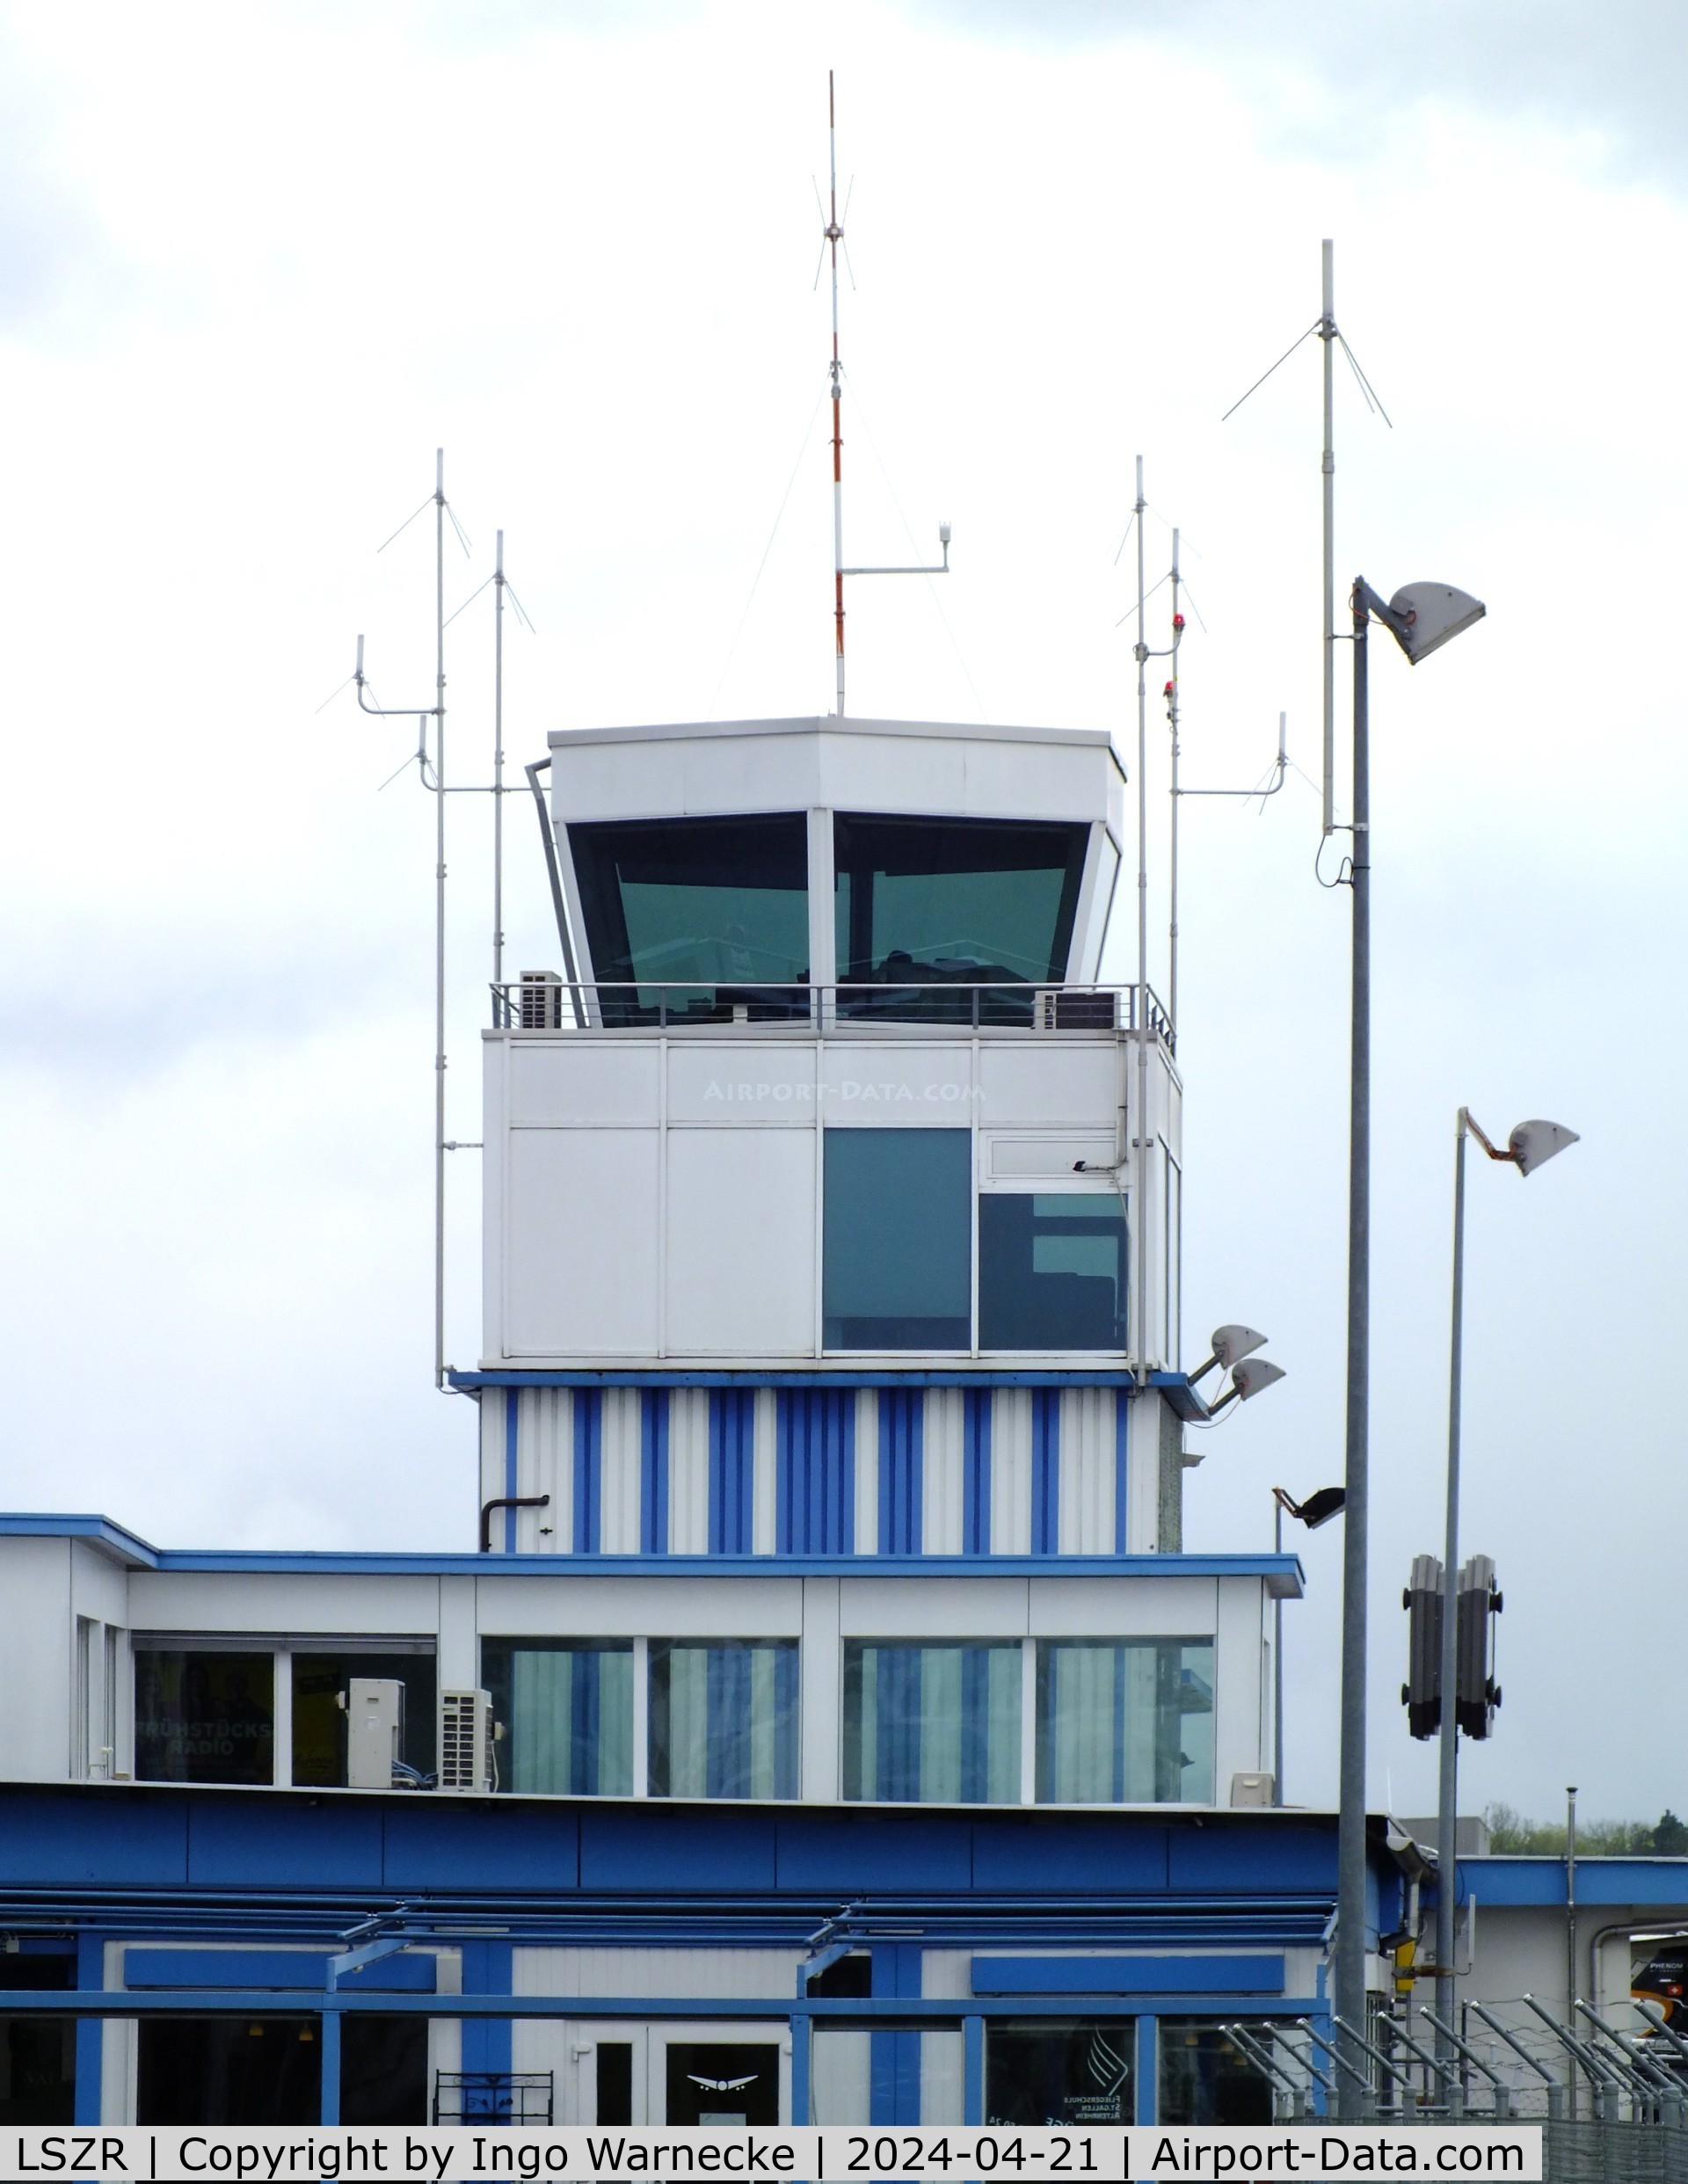 St. Gallen-Altenrhein Airport, Altenrhein Switzerland (LSZR) - tower at St.Gallen-Altenrhein airport